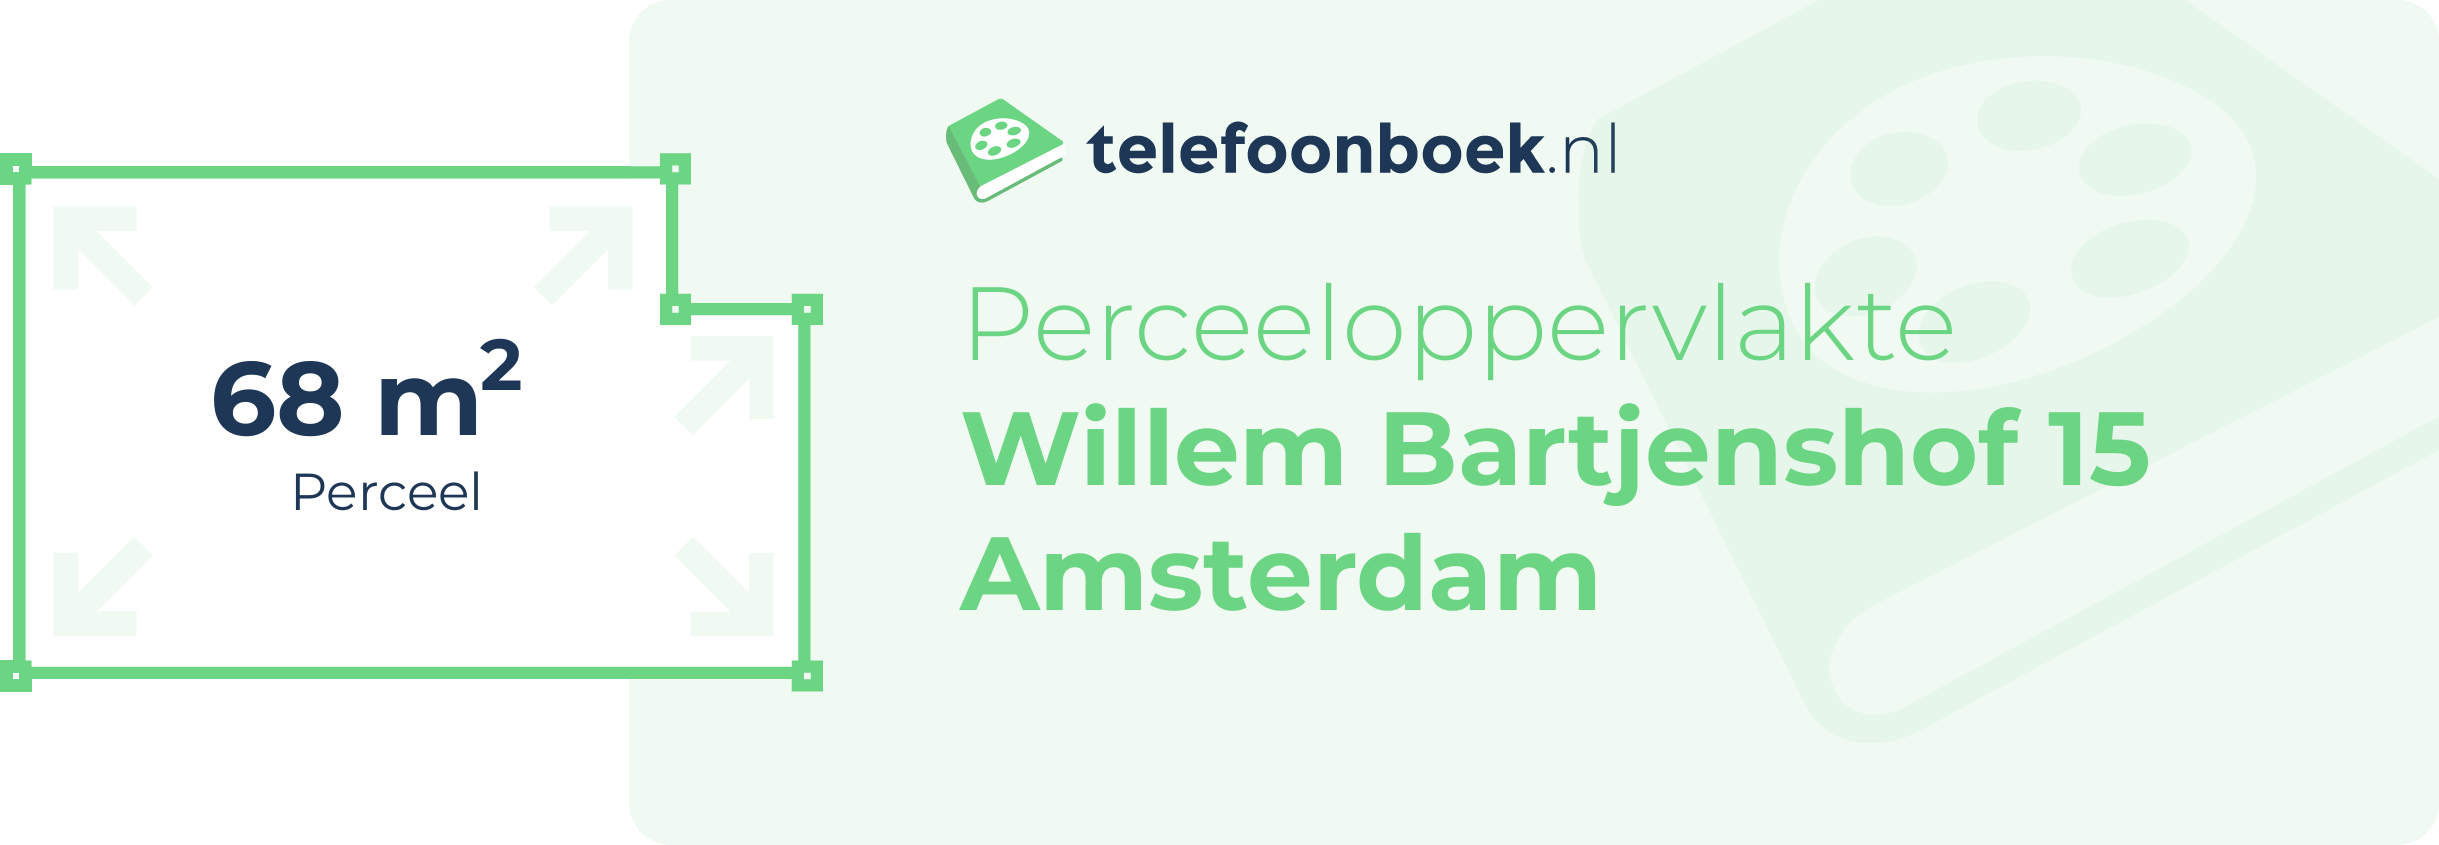 Perceeloppervlakte Willem Bartjenshof 15 Amsterdam